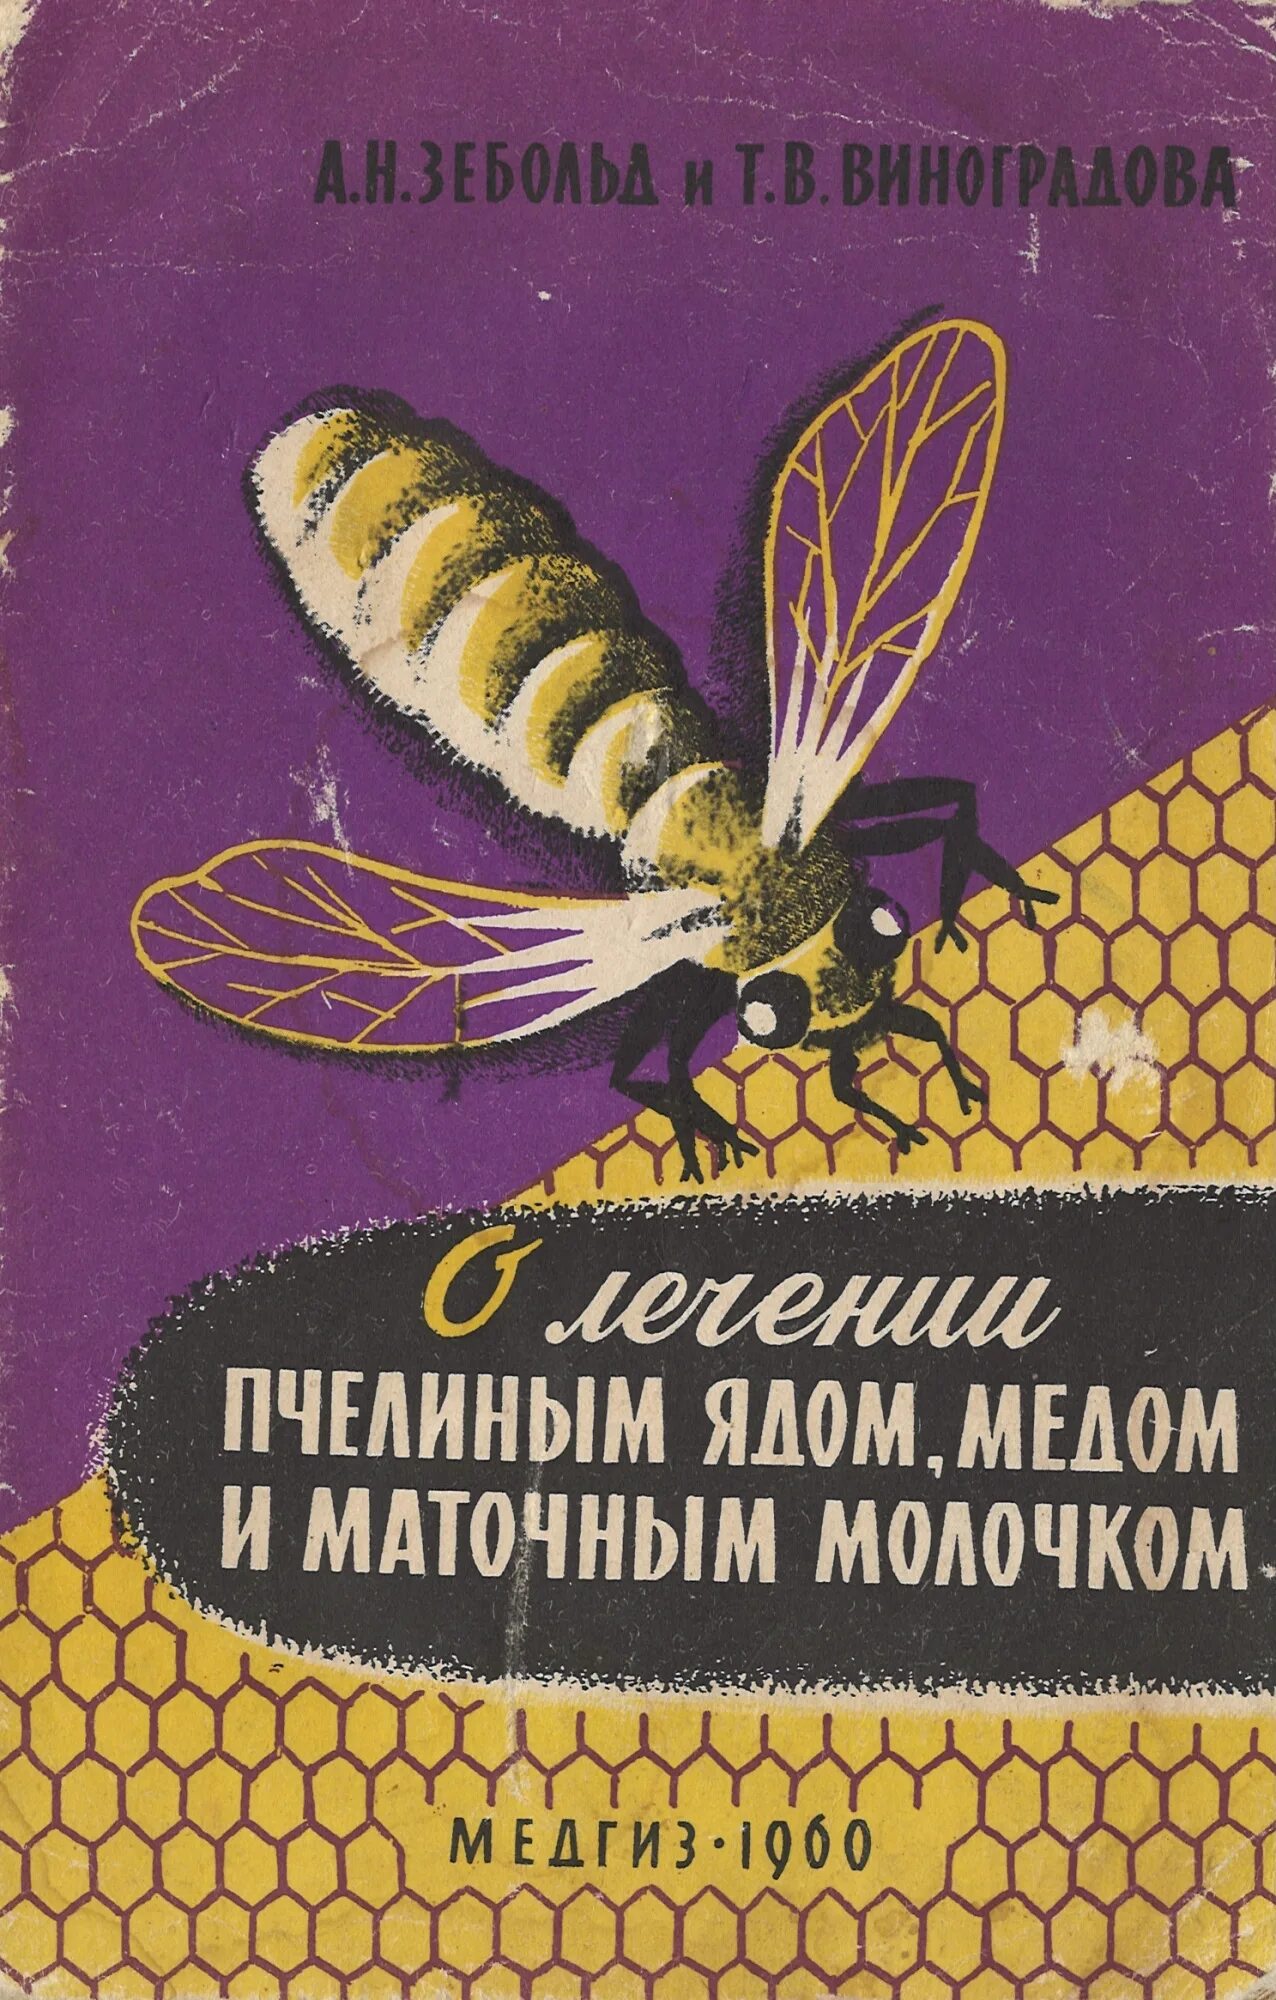 Мед пчелиный яд. Буклет про пчел.